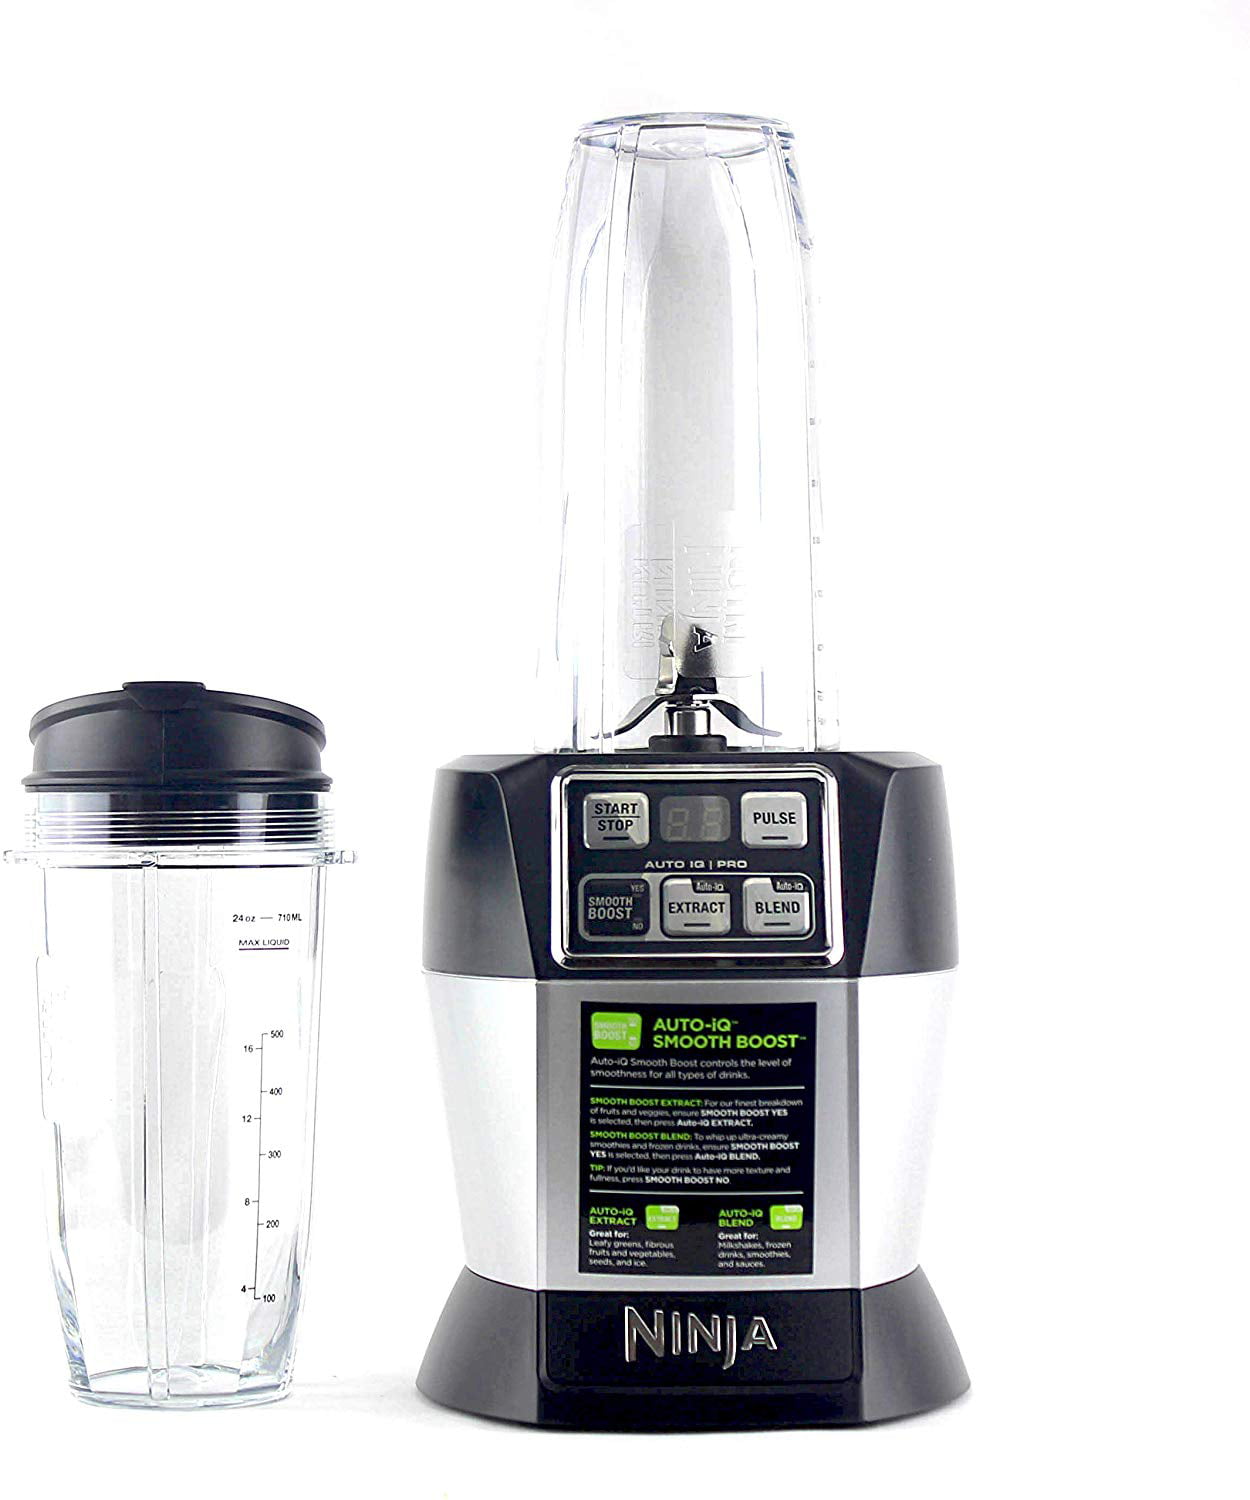 Best blender deal: The Ninja Nutri-Blender Pro is over 20% off at